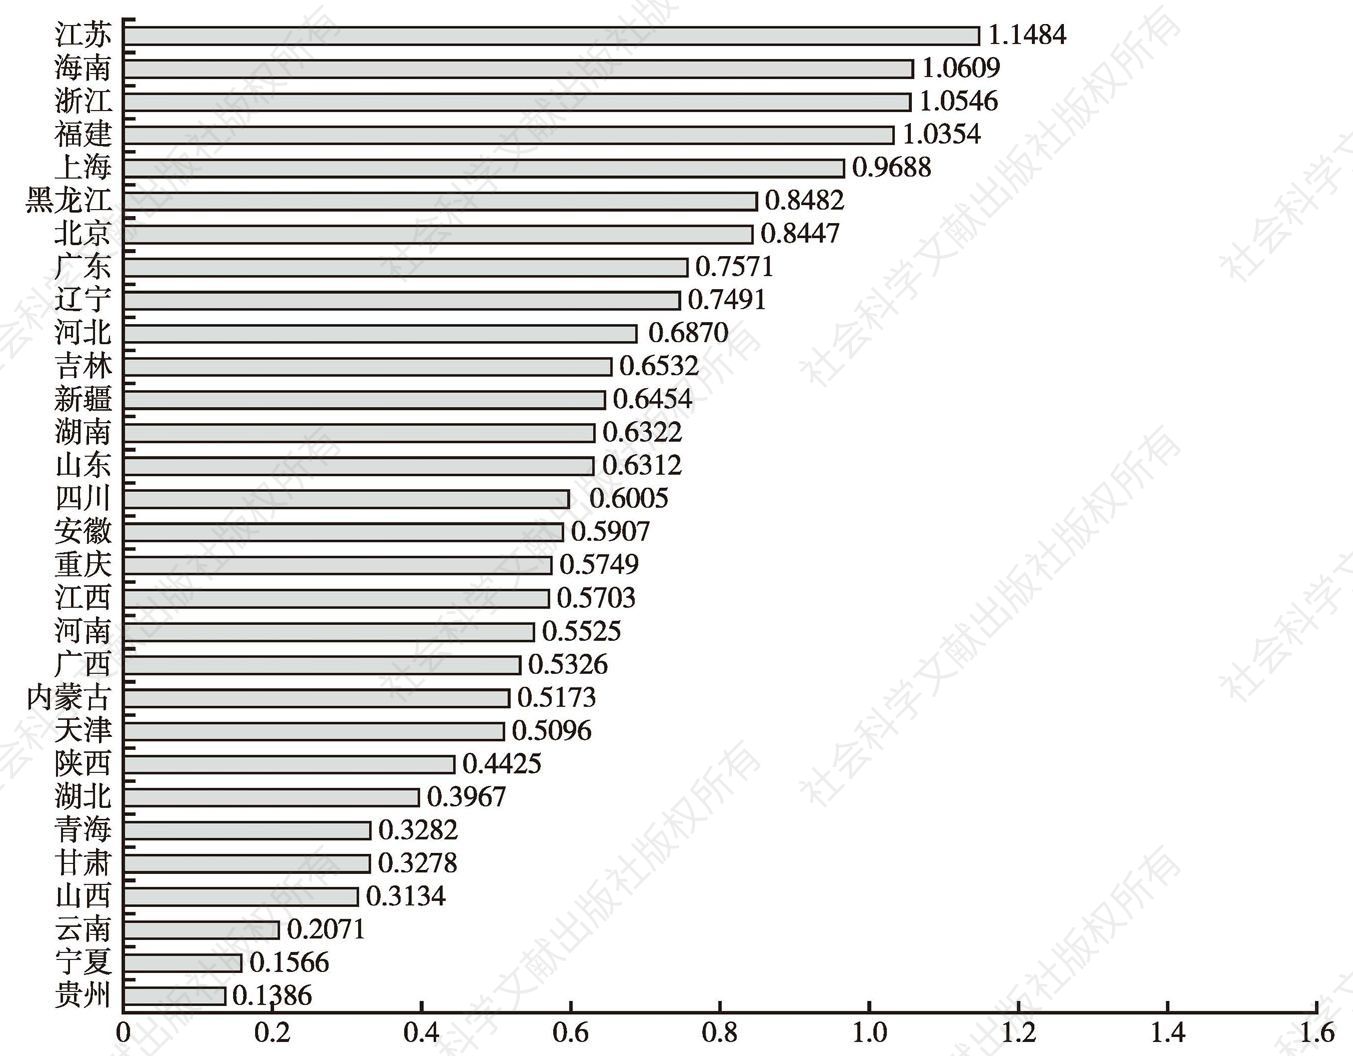 图4-3 2012年各地区产业协调指数排序